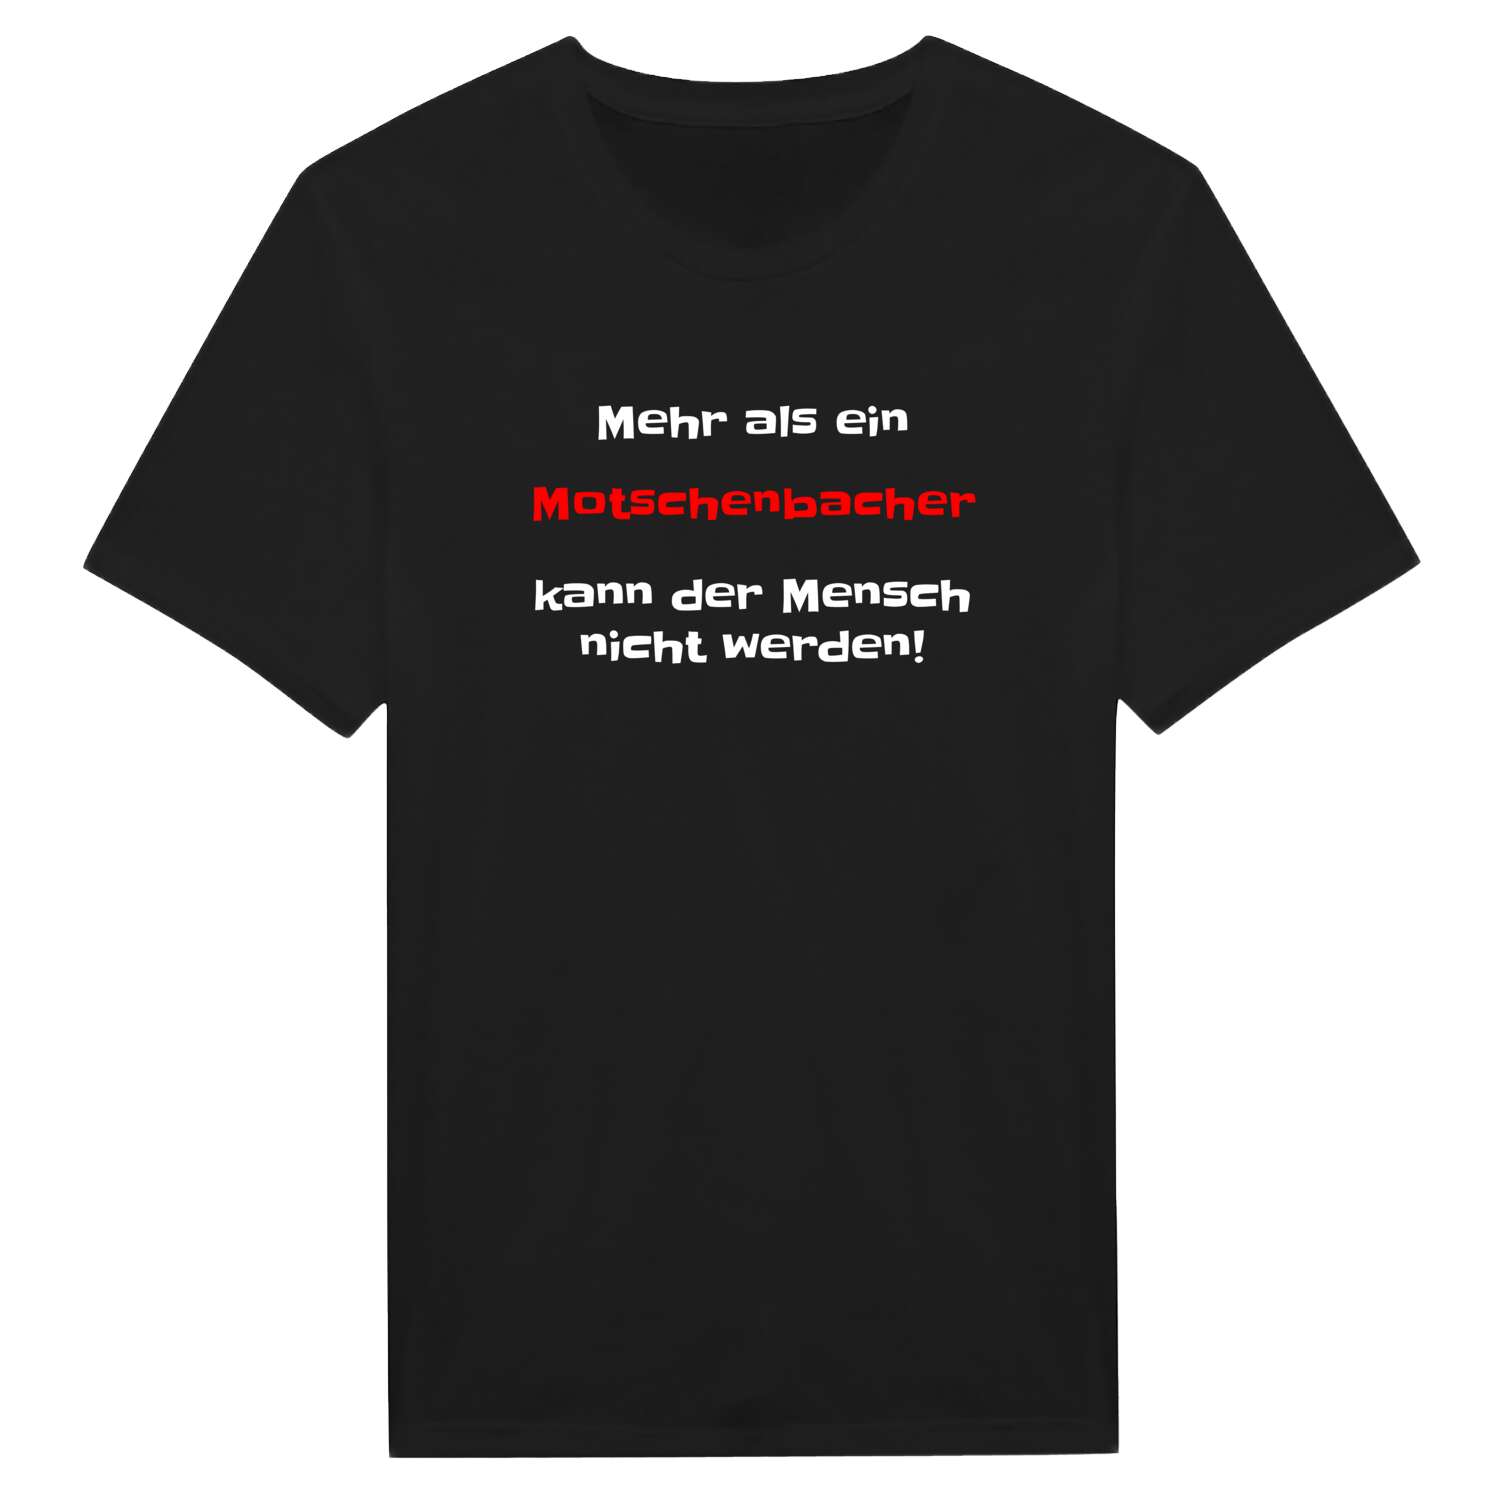 Motschenbach T-Shirt »Mehr als ein«